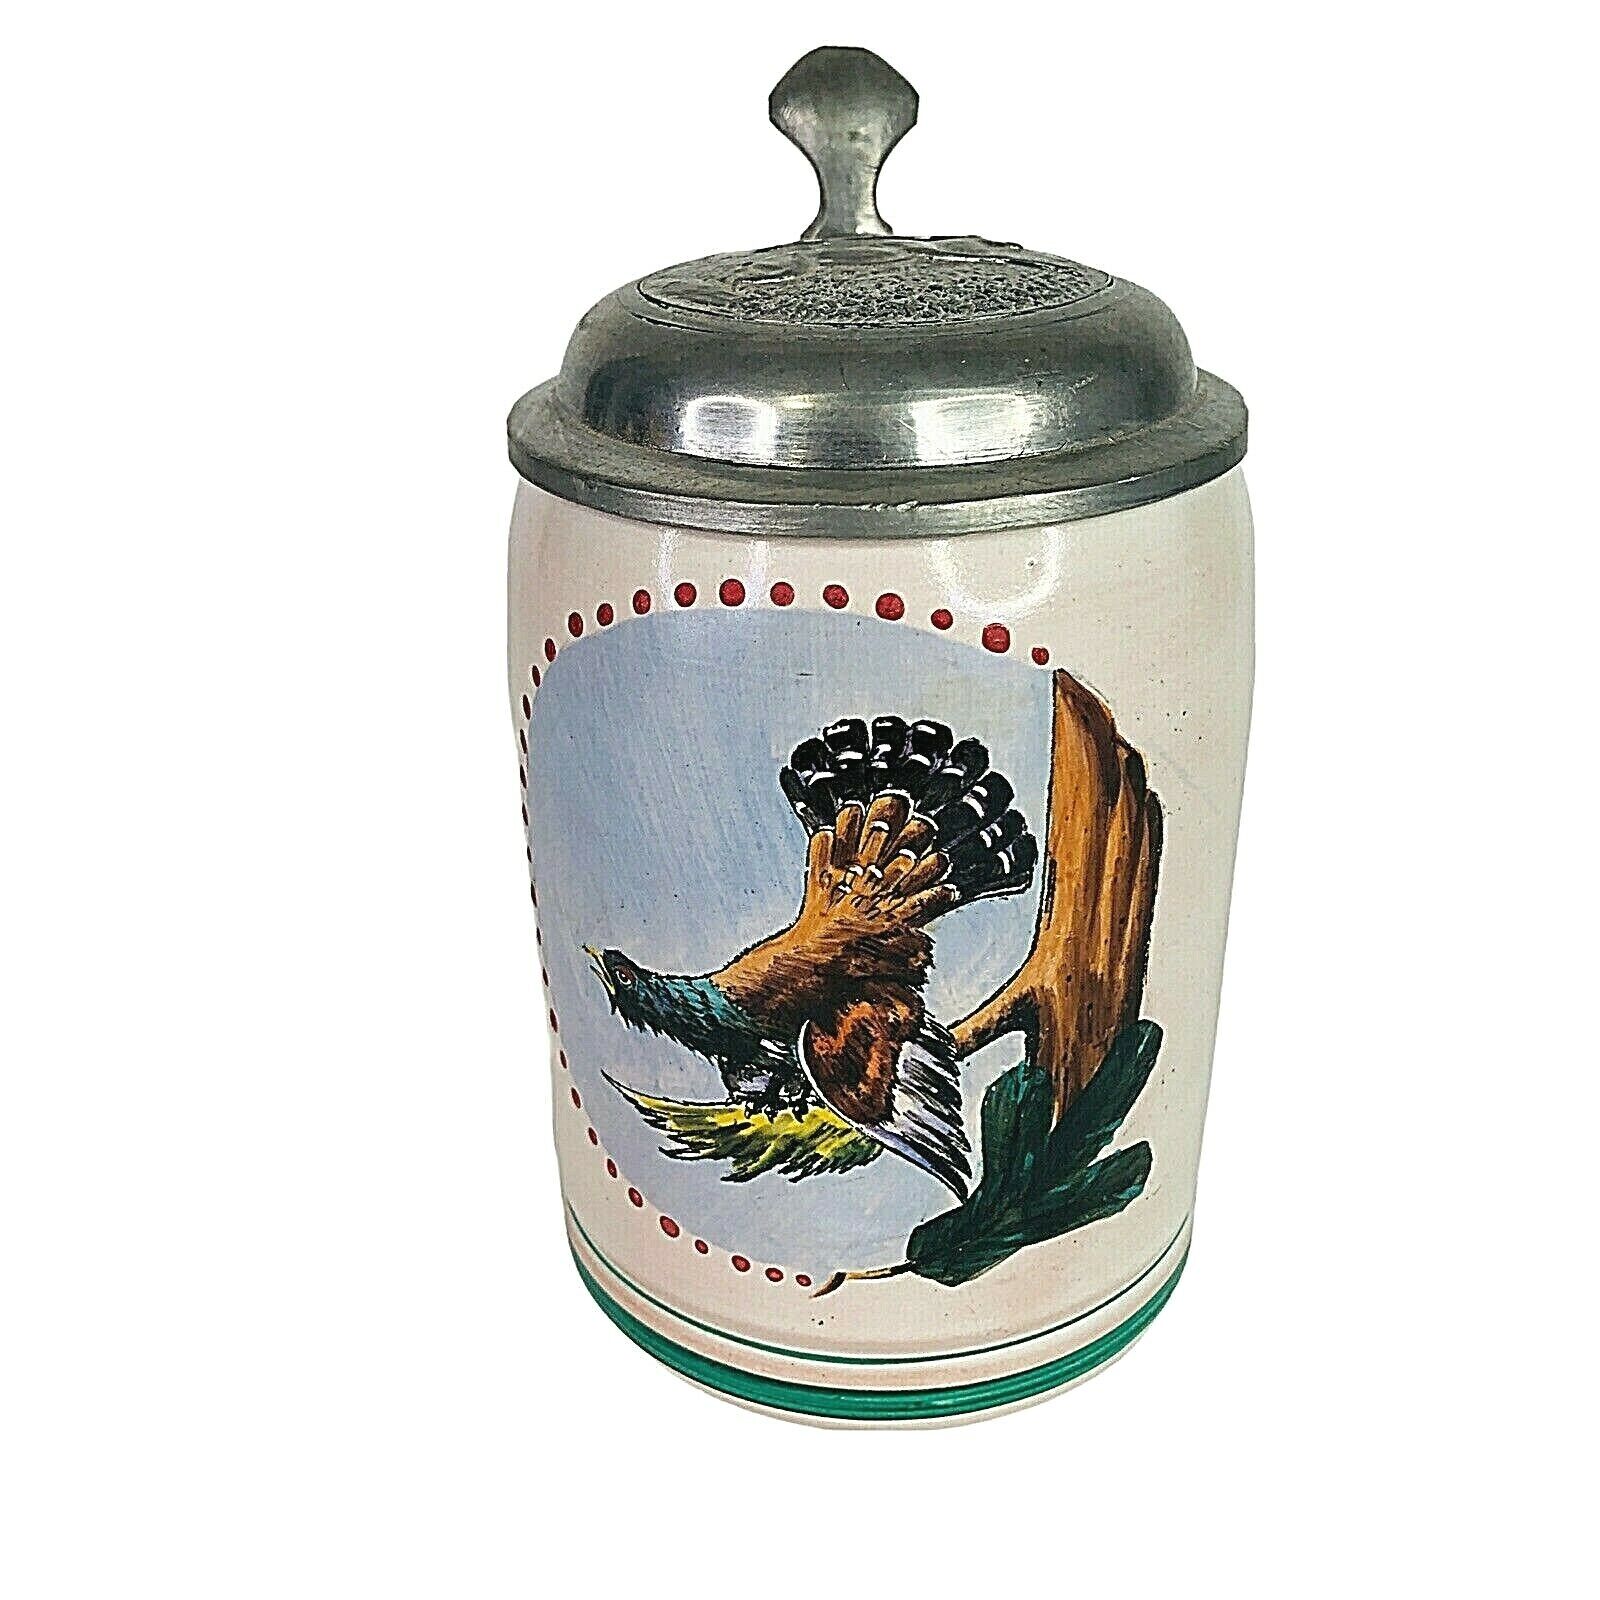 Gmundner Keramik Ceramic Beer Stein Coffee Mug Pottery Made In Austria Vintage